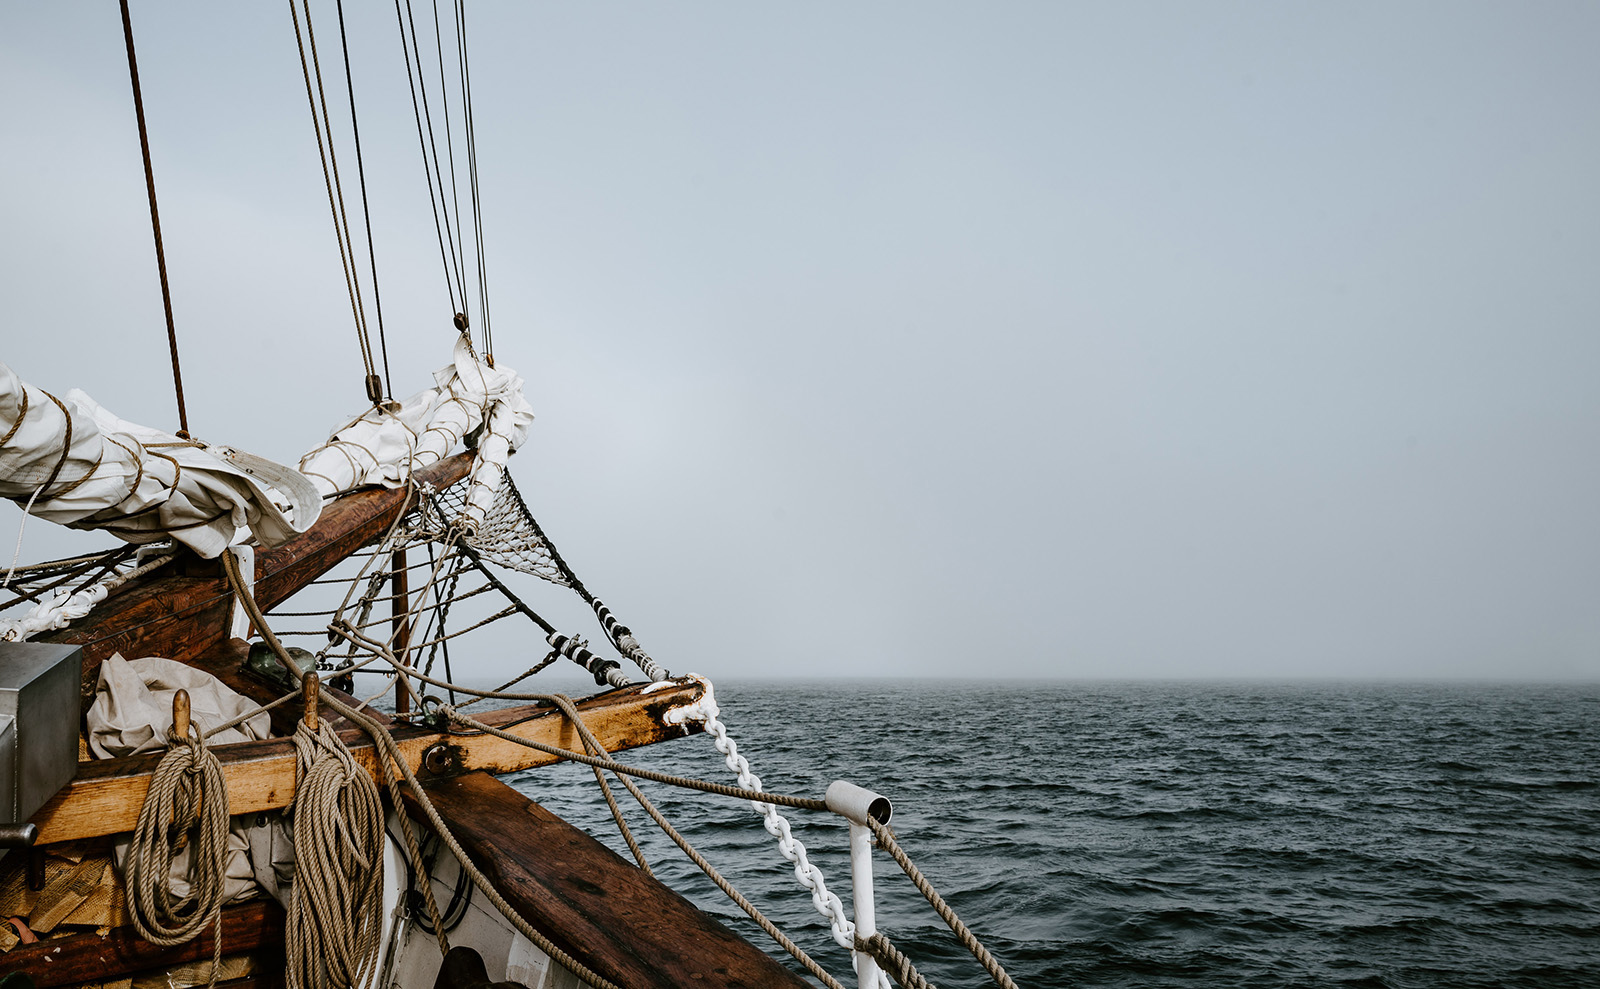 schooner sailing in the open ocean